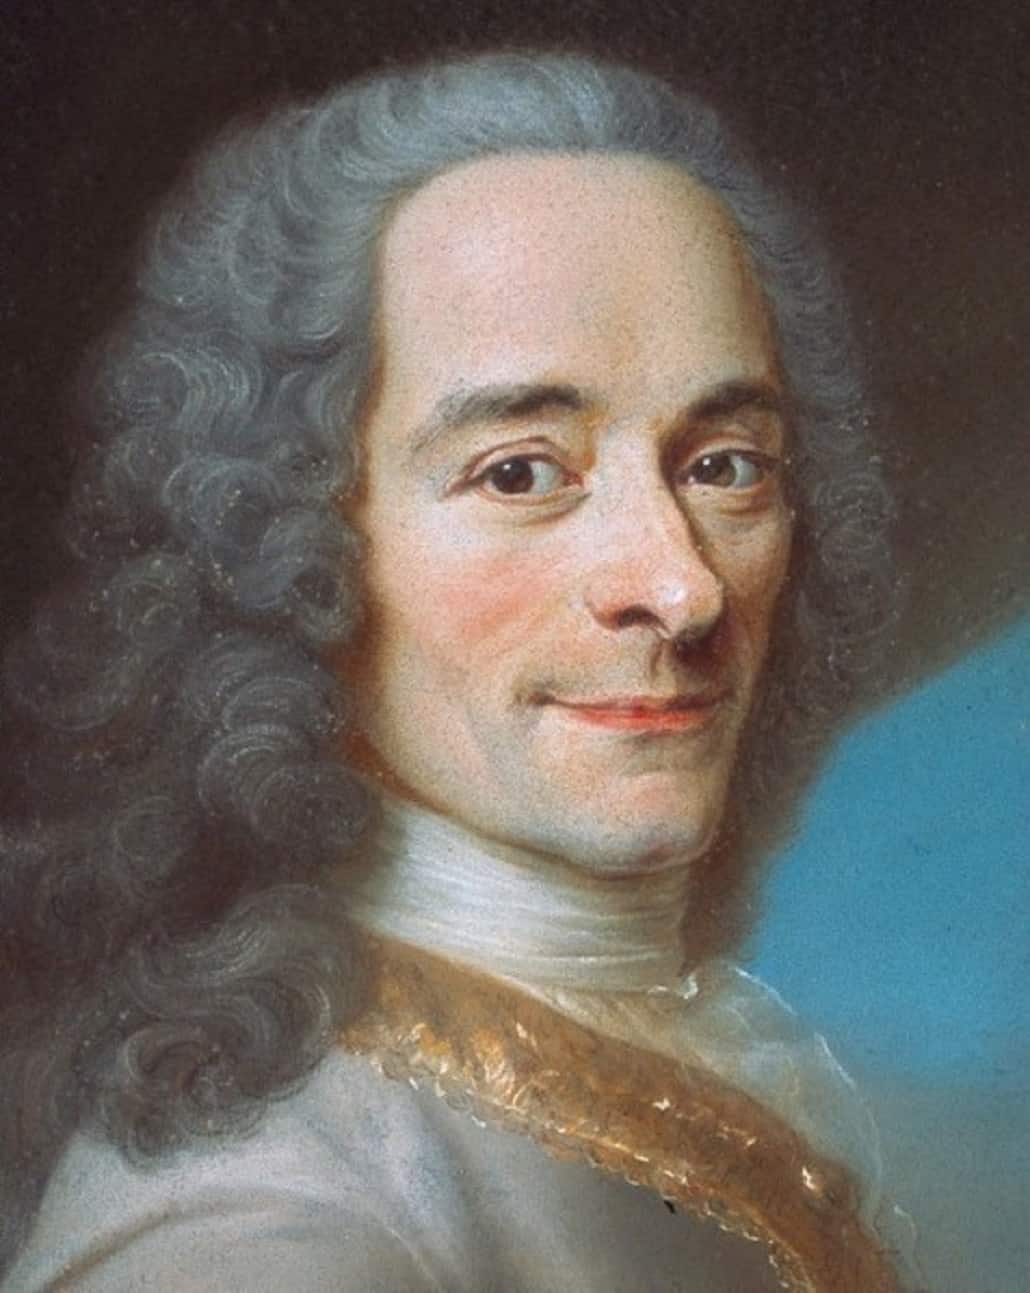 François-Marie Arouet, dit Voltaire